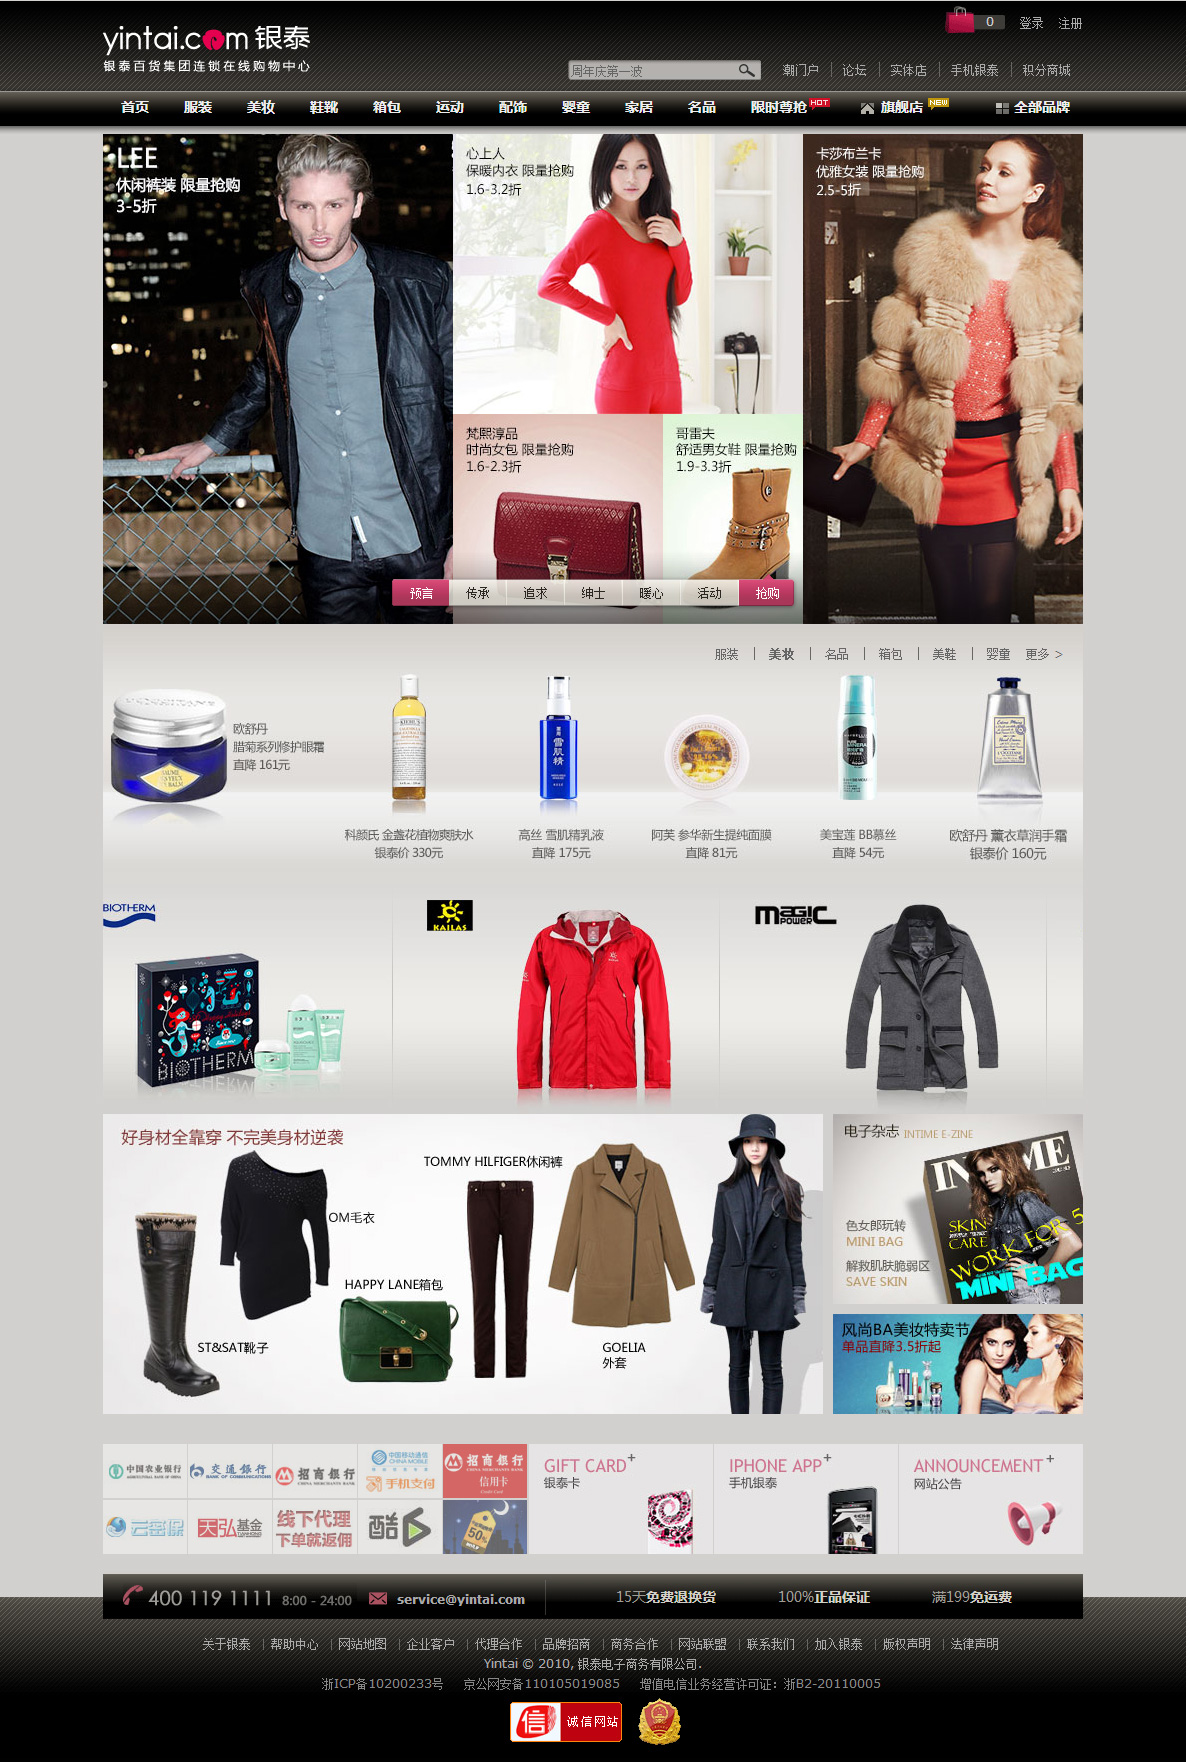 银泰网，是专注于精品时尚百货经营的大型B2C电子商务平台。